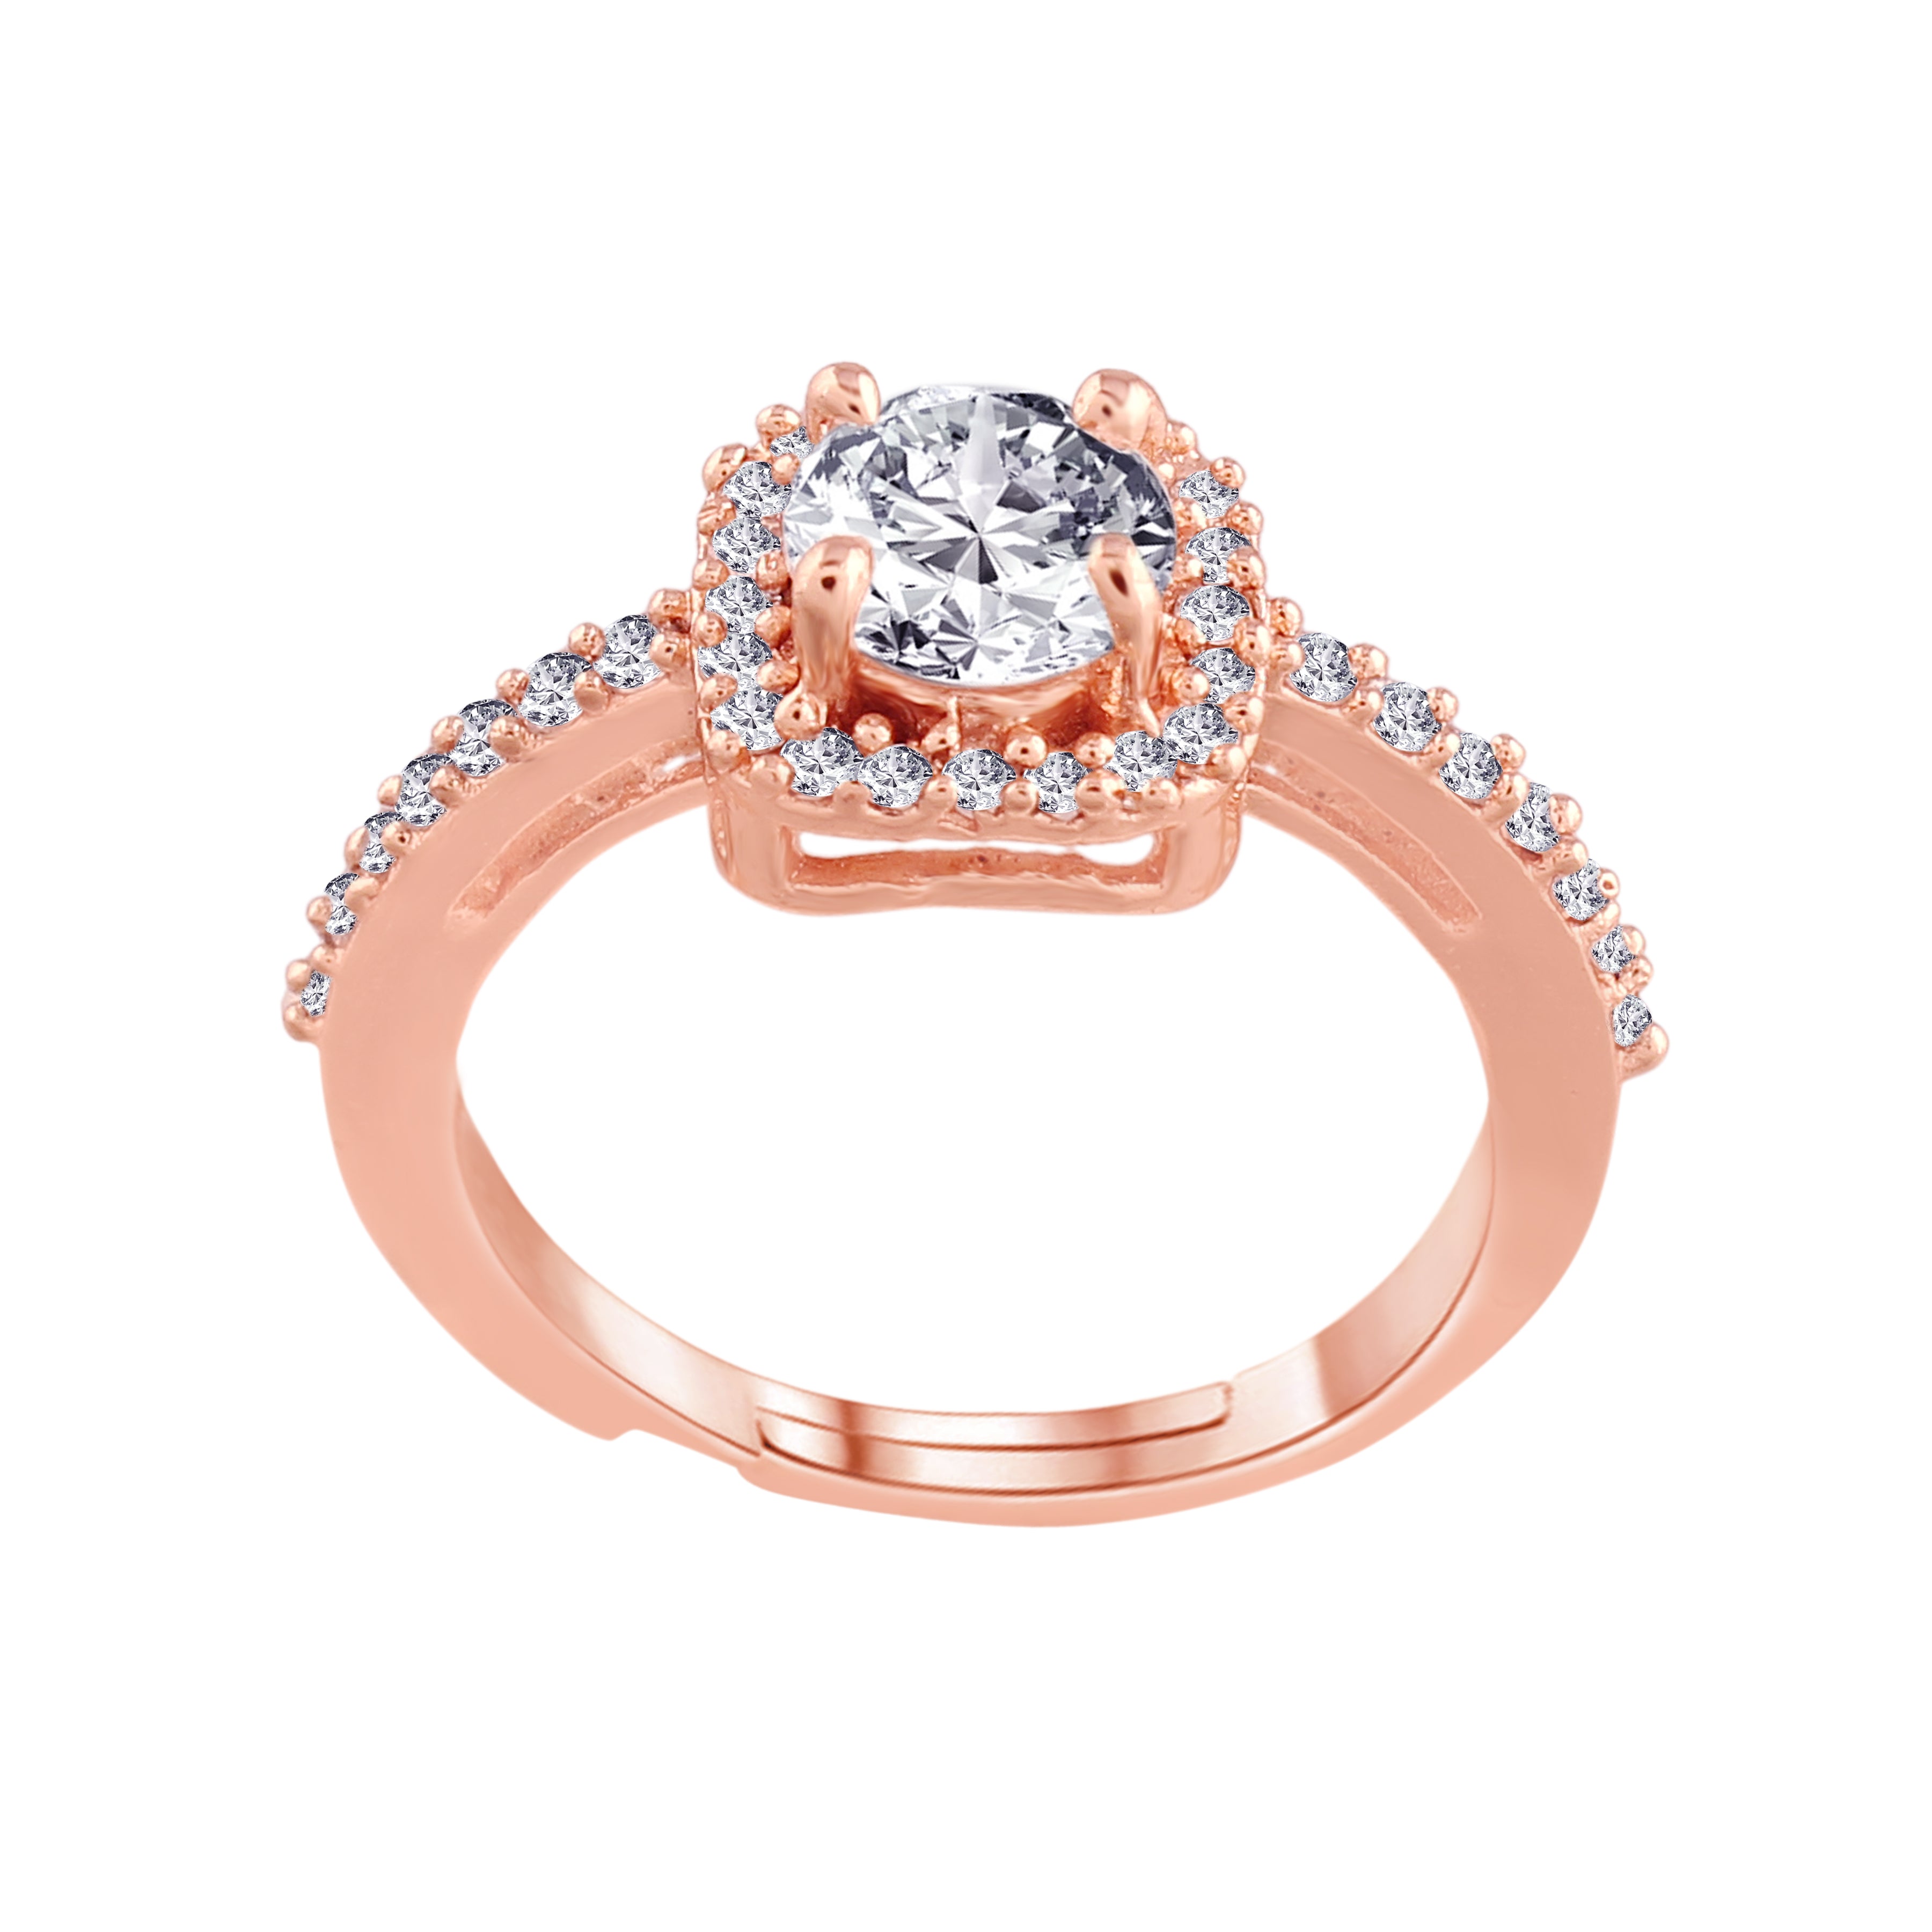 Women's Rose Gold Crystal AD Sparkling Adjustable Finger Ring - I Jewels